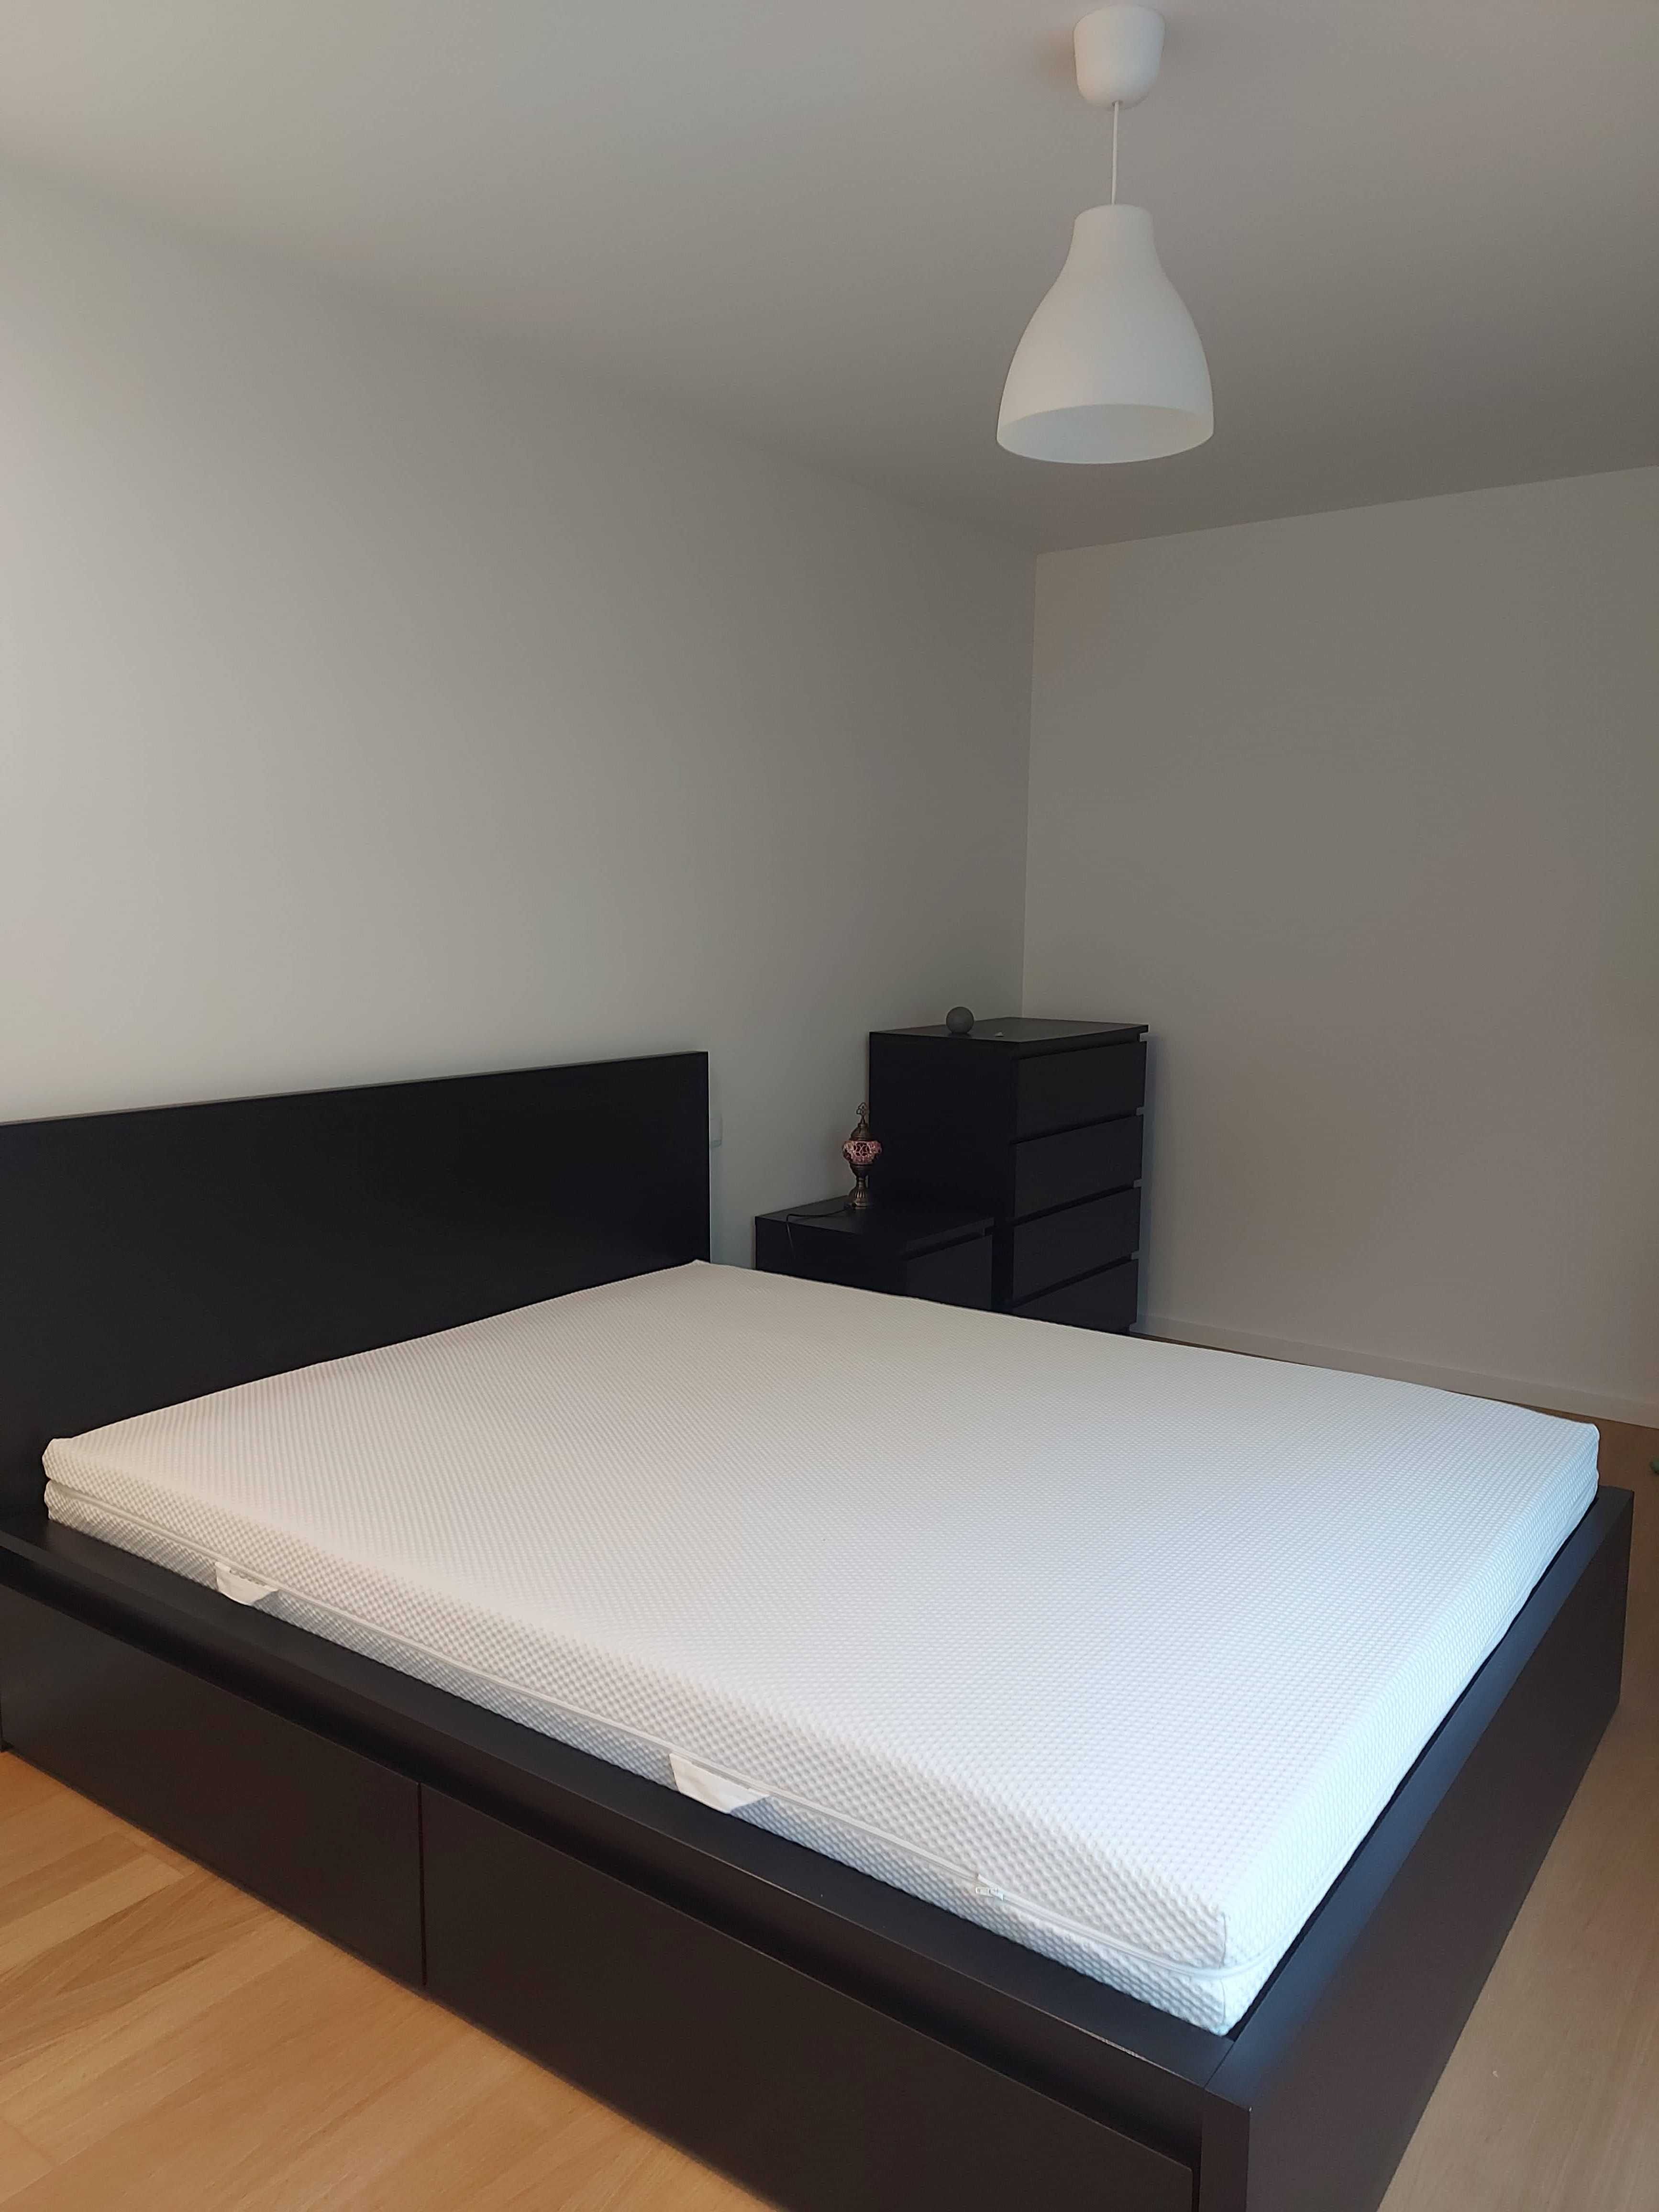 T1 em Guimarães mobilado / 1 room furnished flat + internet